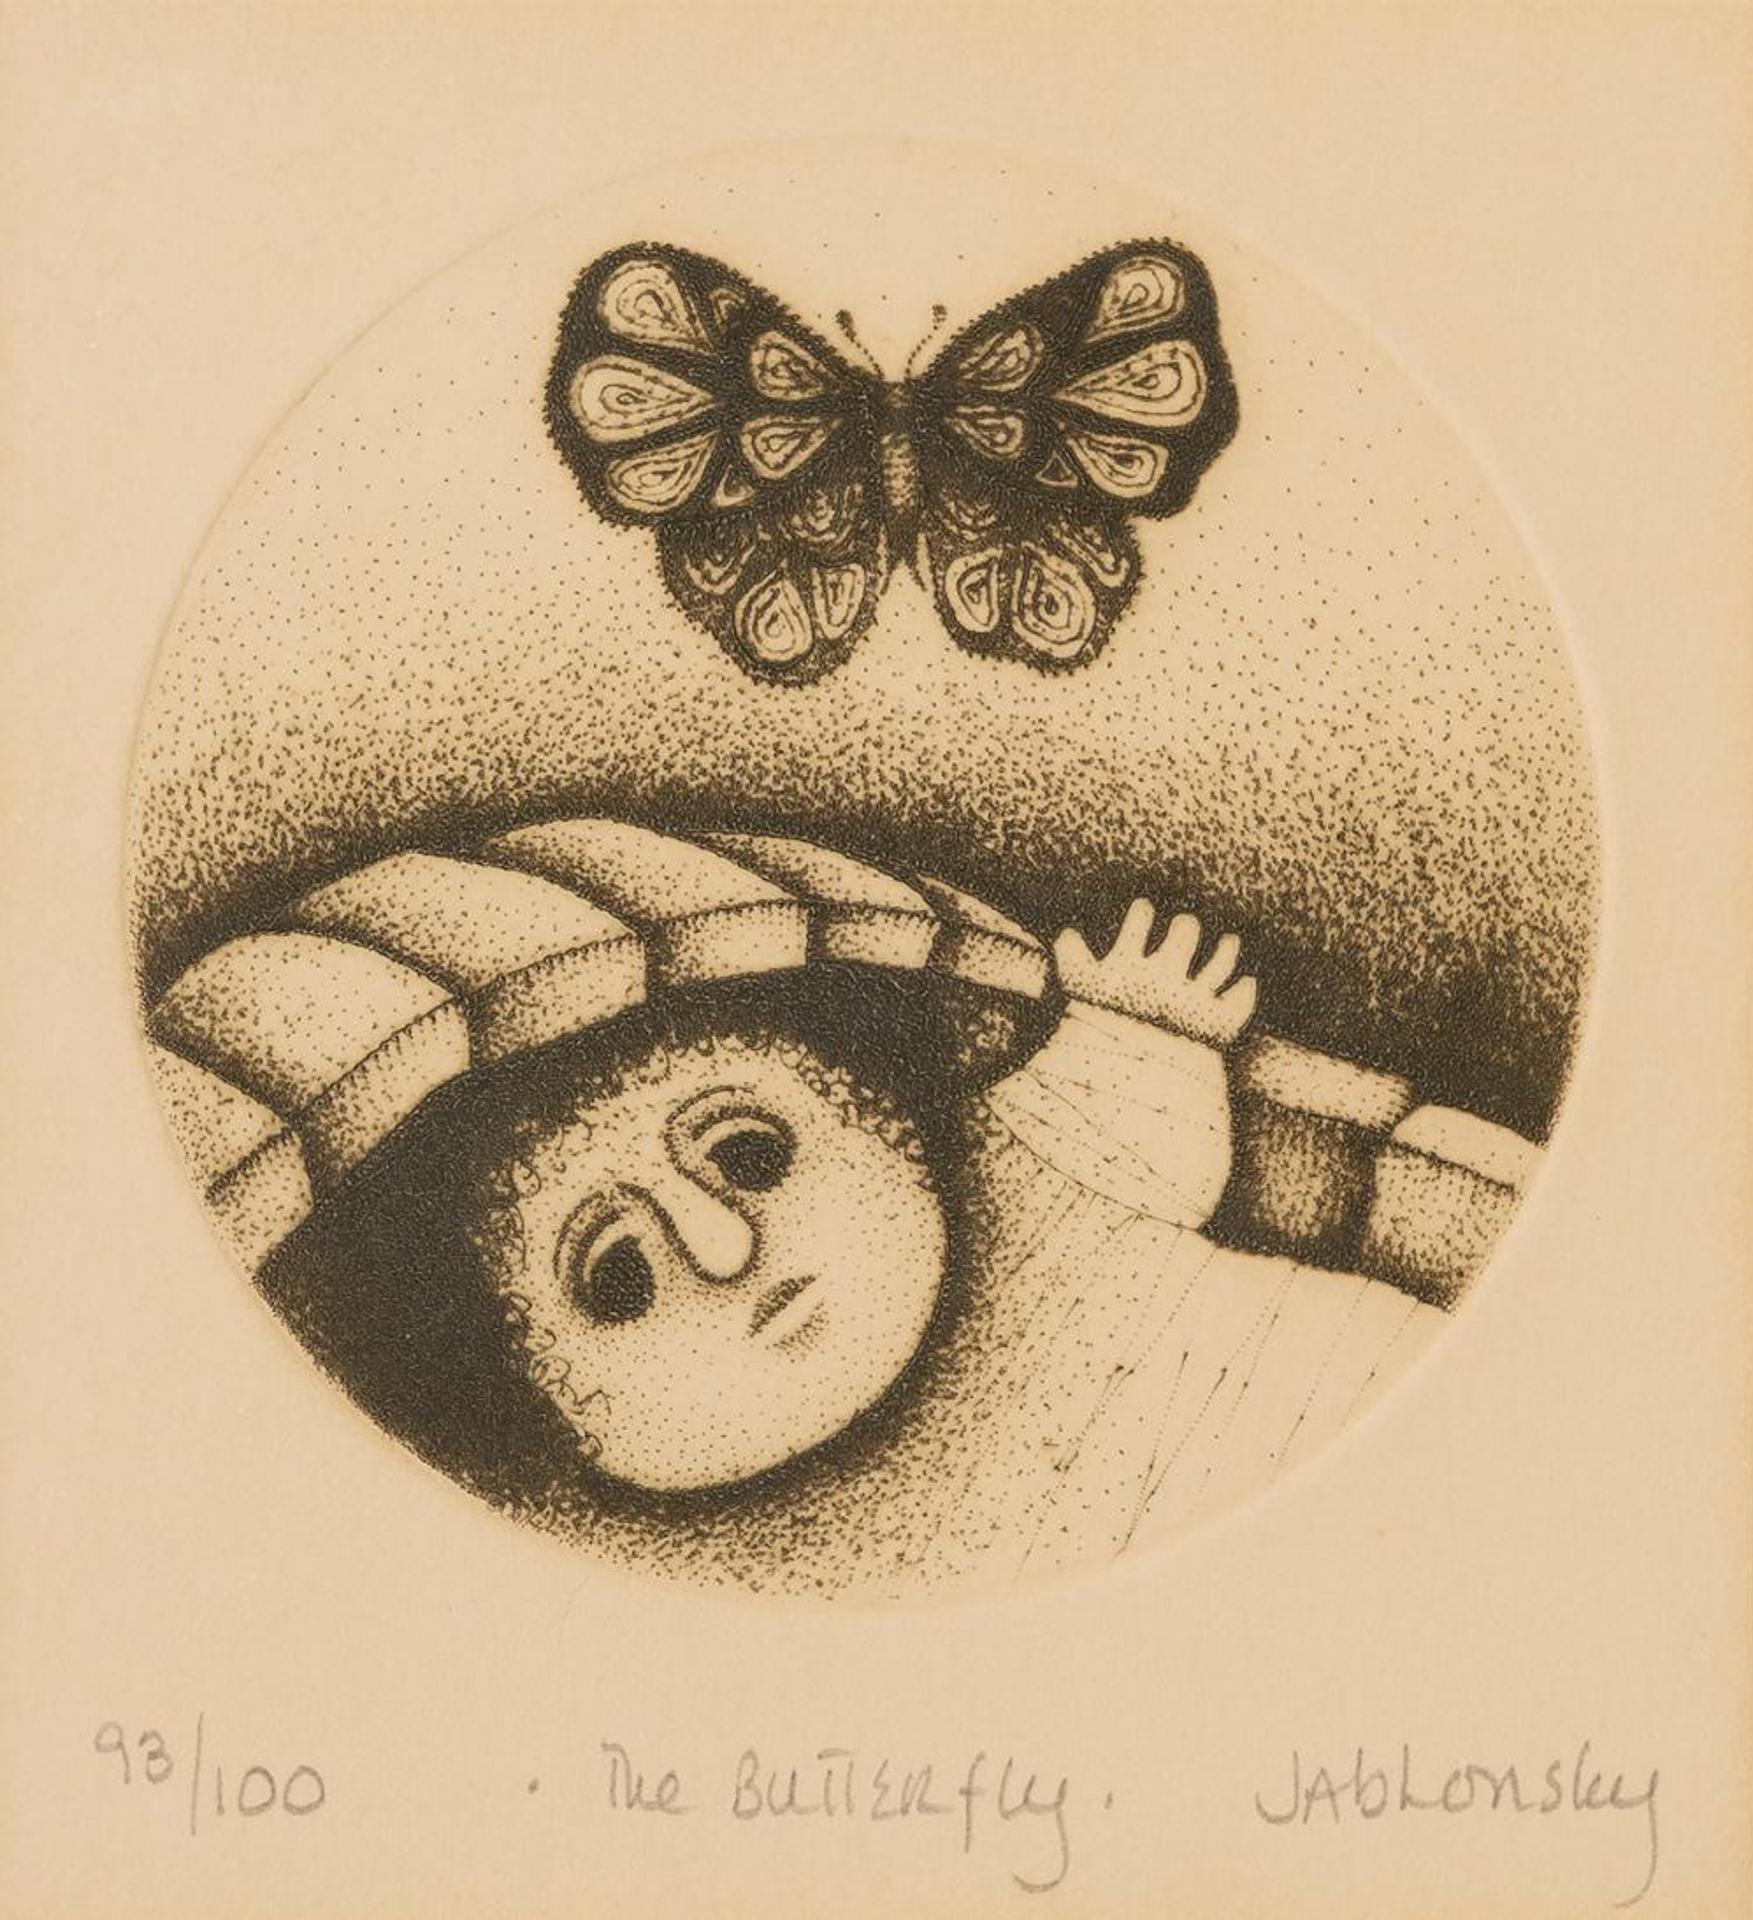 Carol Jablonsky (1939-1992) - The Butterfly